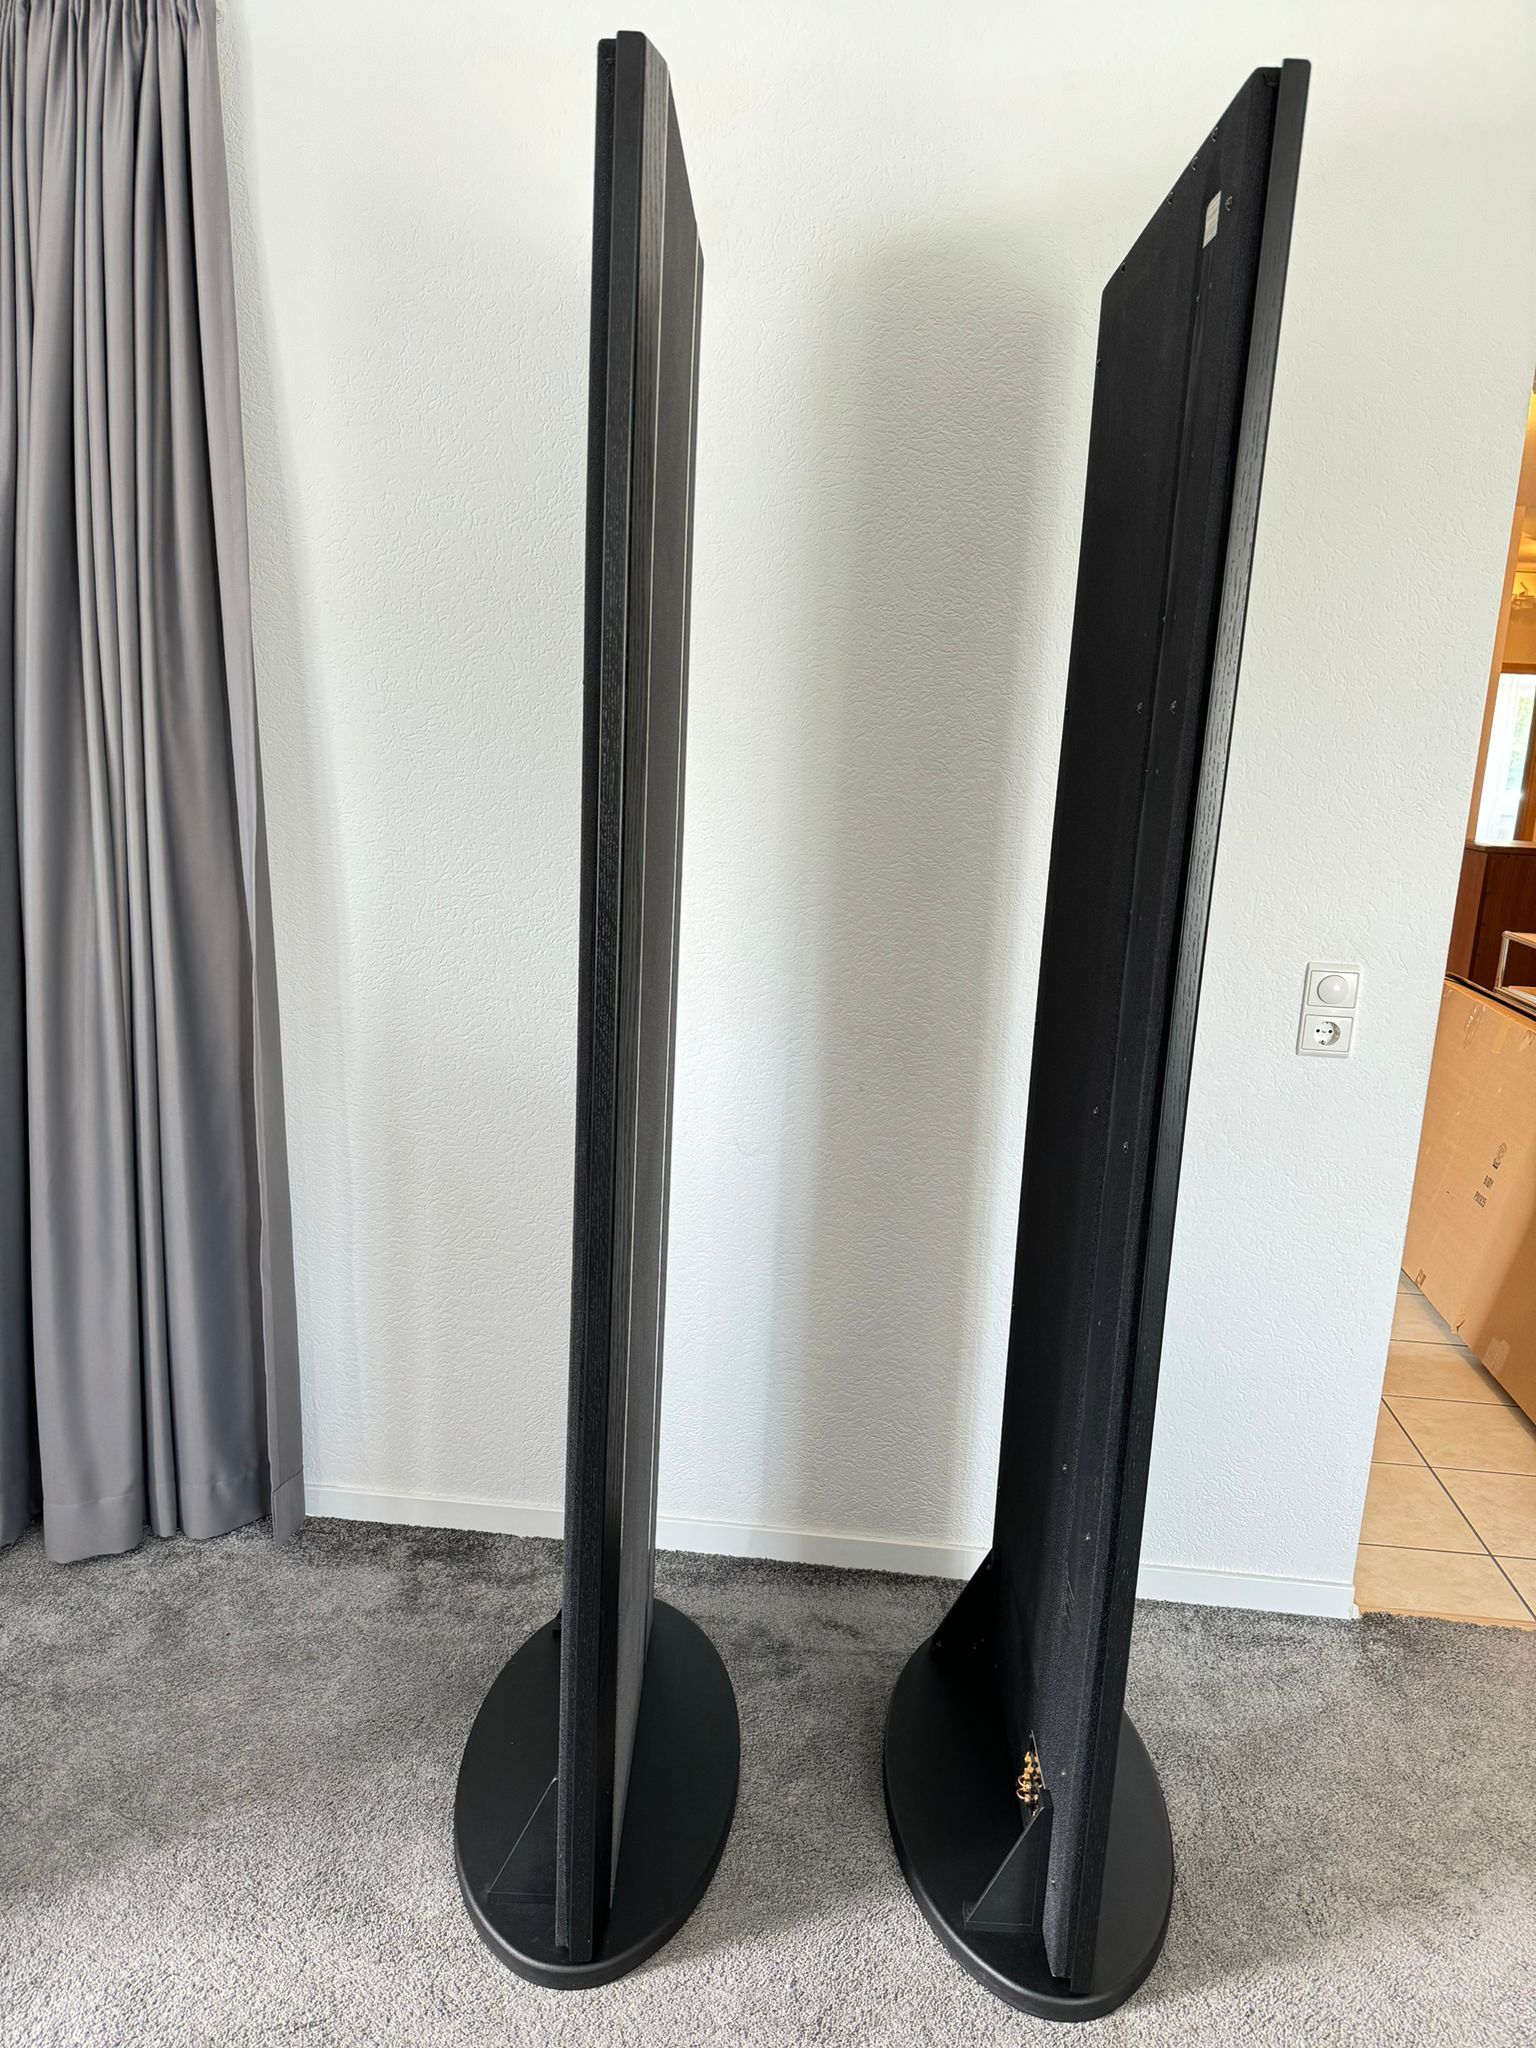 Magnepan 20.7 speakers in black-grey 9